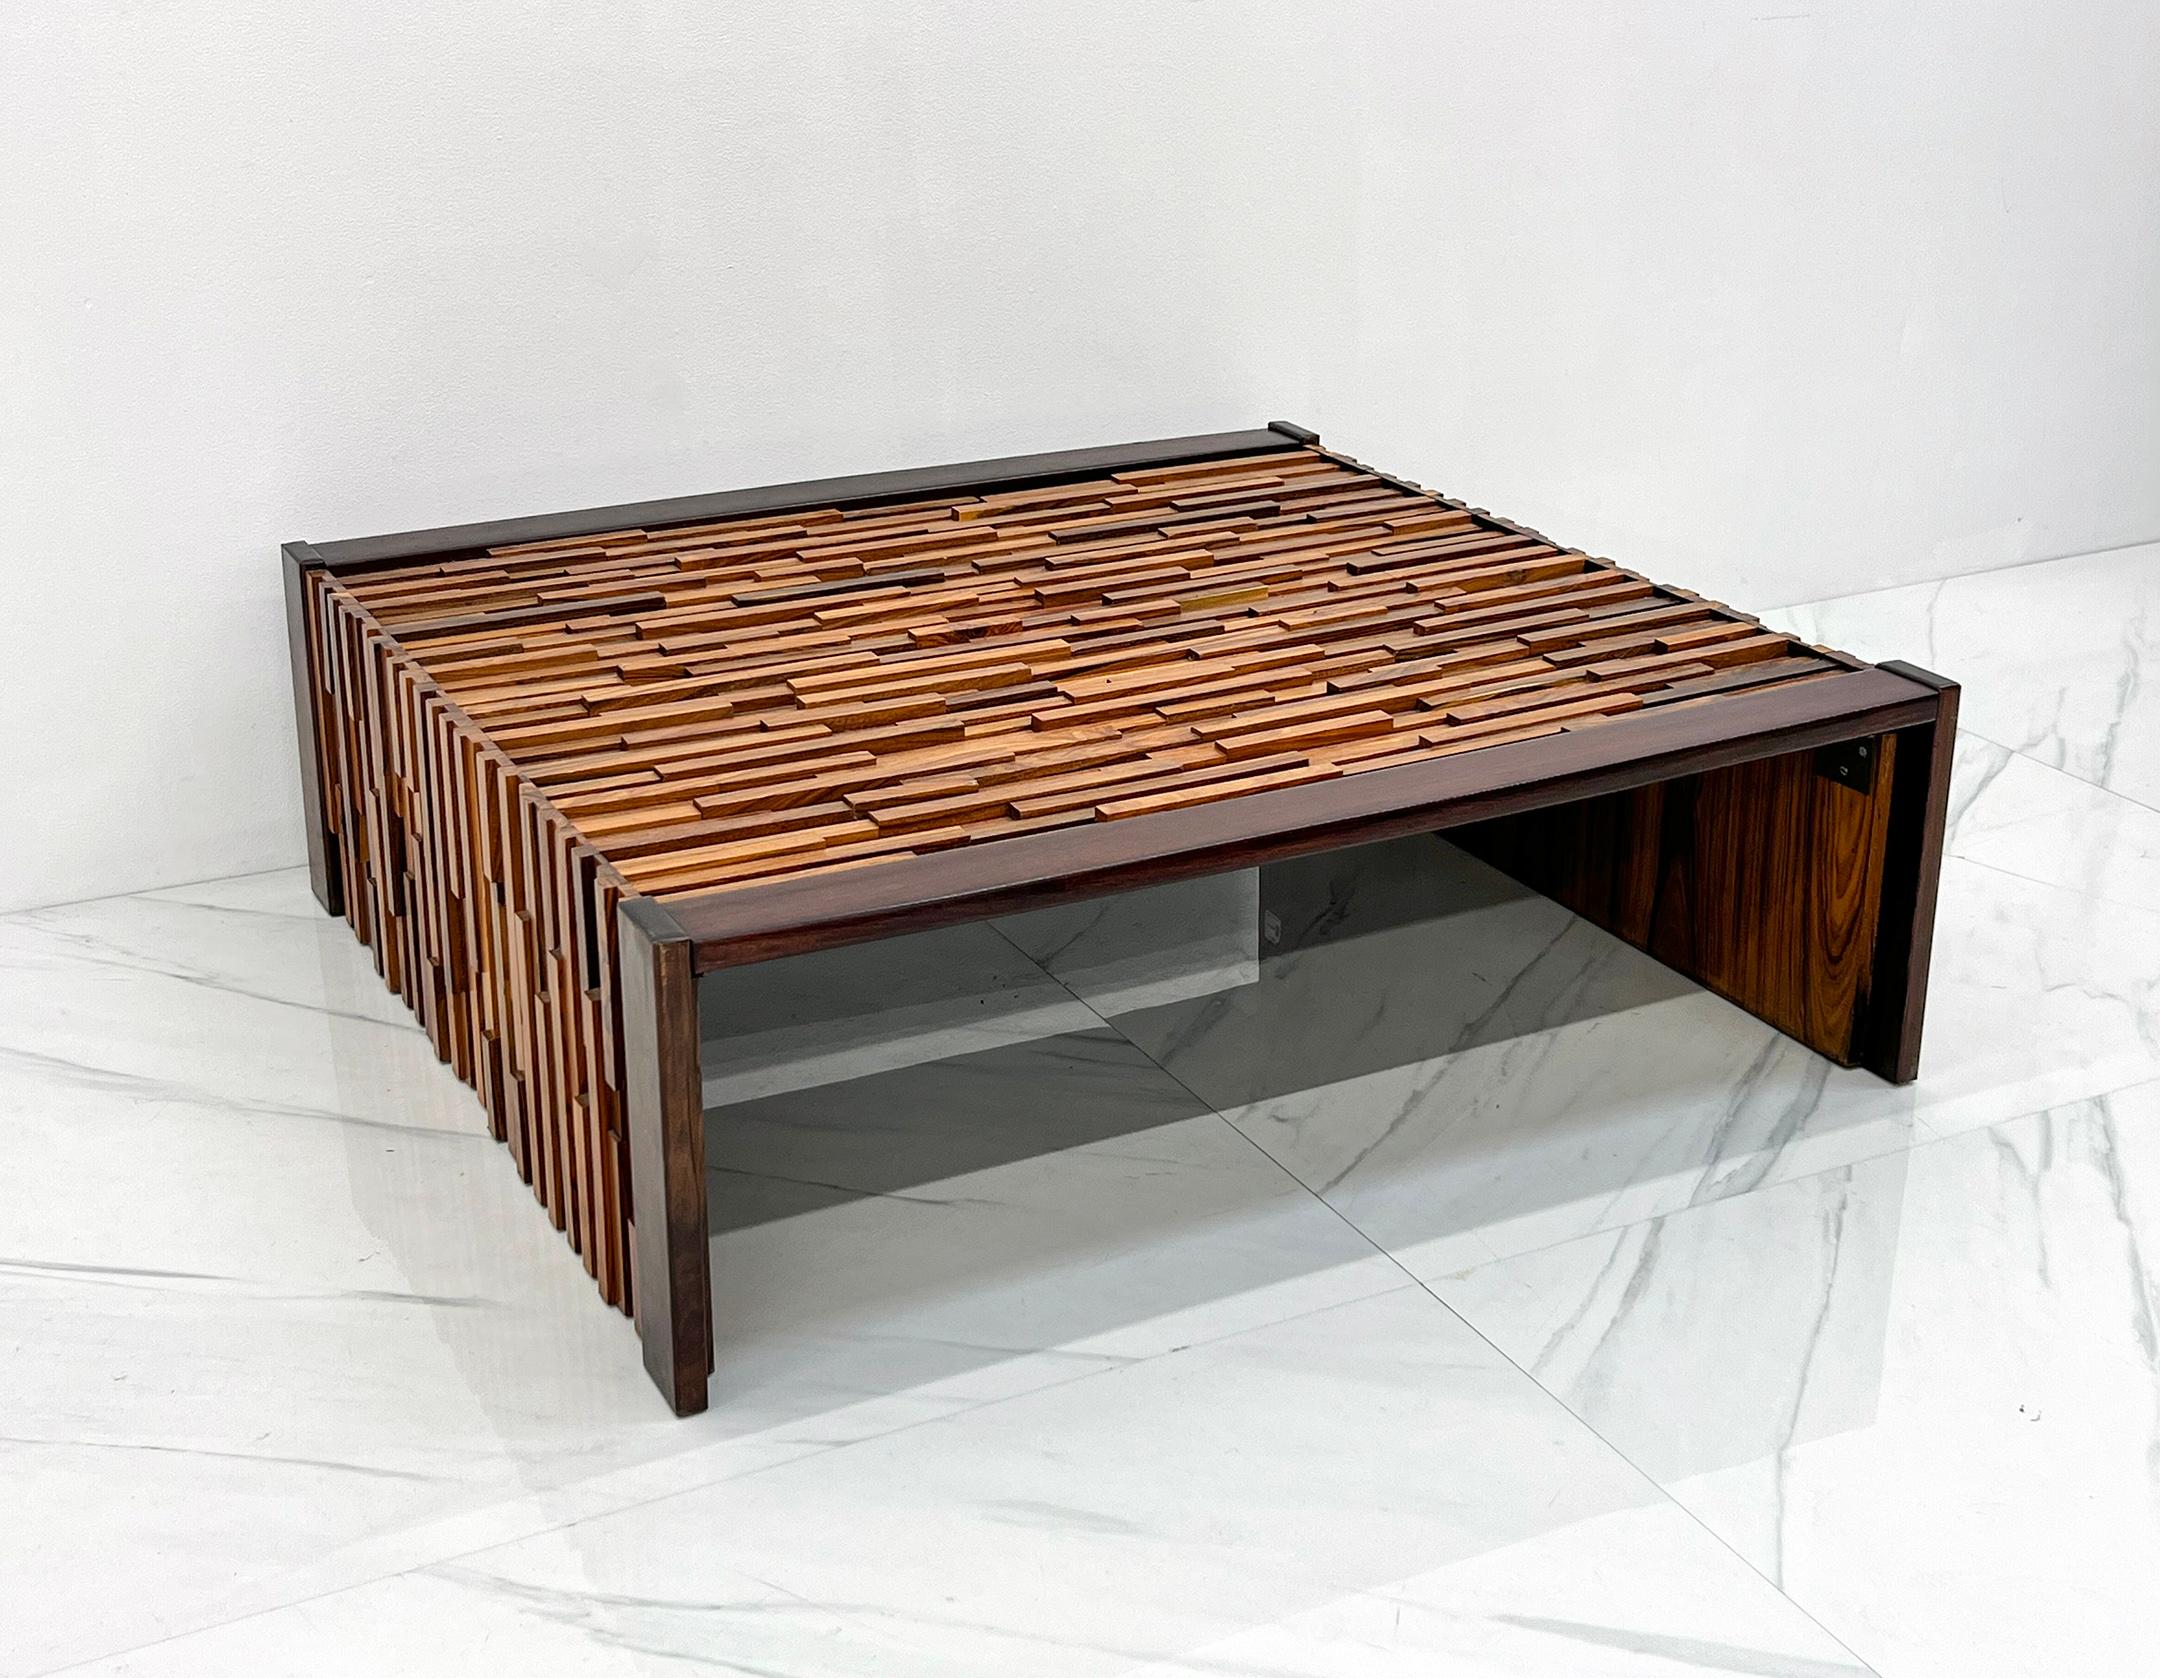 Dieser Couchtisch ist fabelhaft! Entworfen von Percival Lafer, einem brasilianischen Möbeldesigner, der für seine innovativen und modernen Designs bekannt ist. Eine seiner ikonischsten Kreationen ist der Percival Lafer-Klapptisch, der in den 1970er